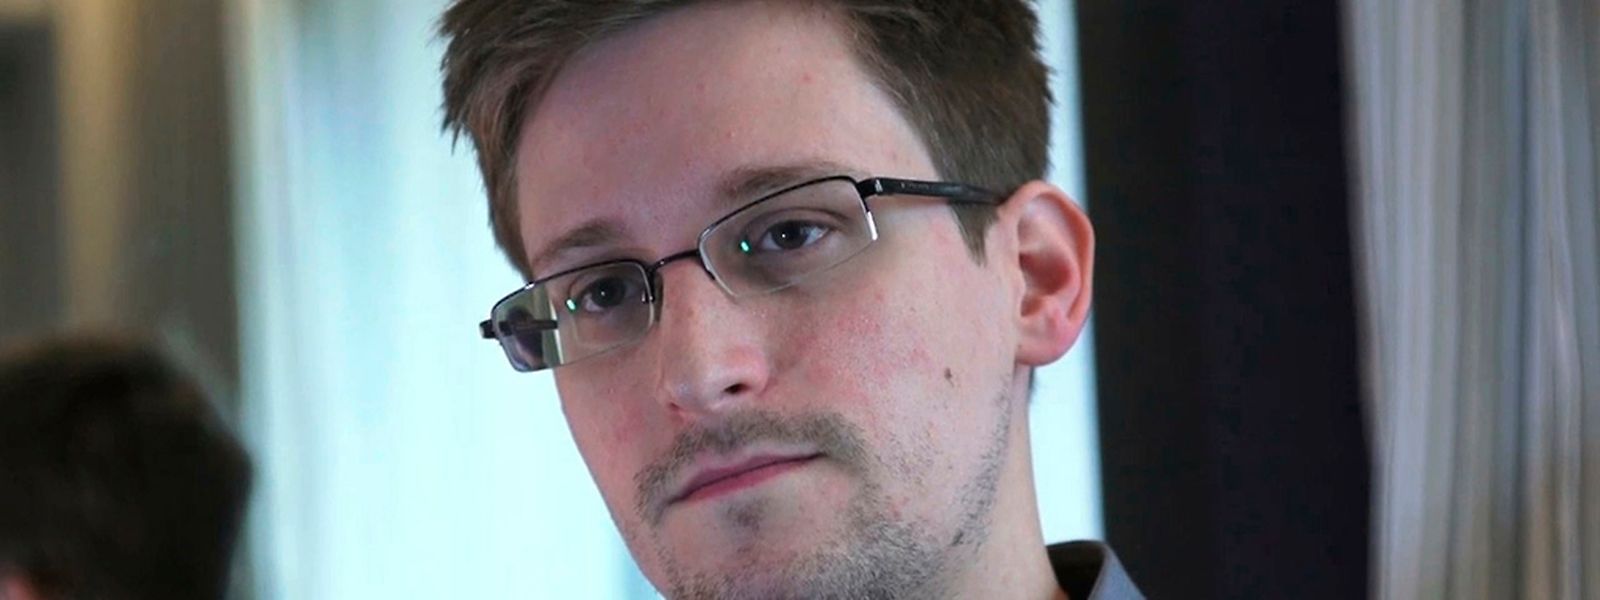 Edward Snowden erhält für seine Enthüllungsarbeit jetzt Anerkennung.